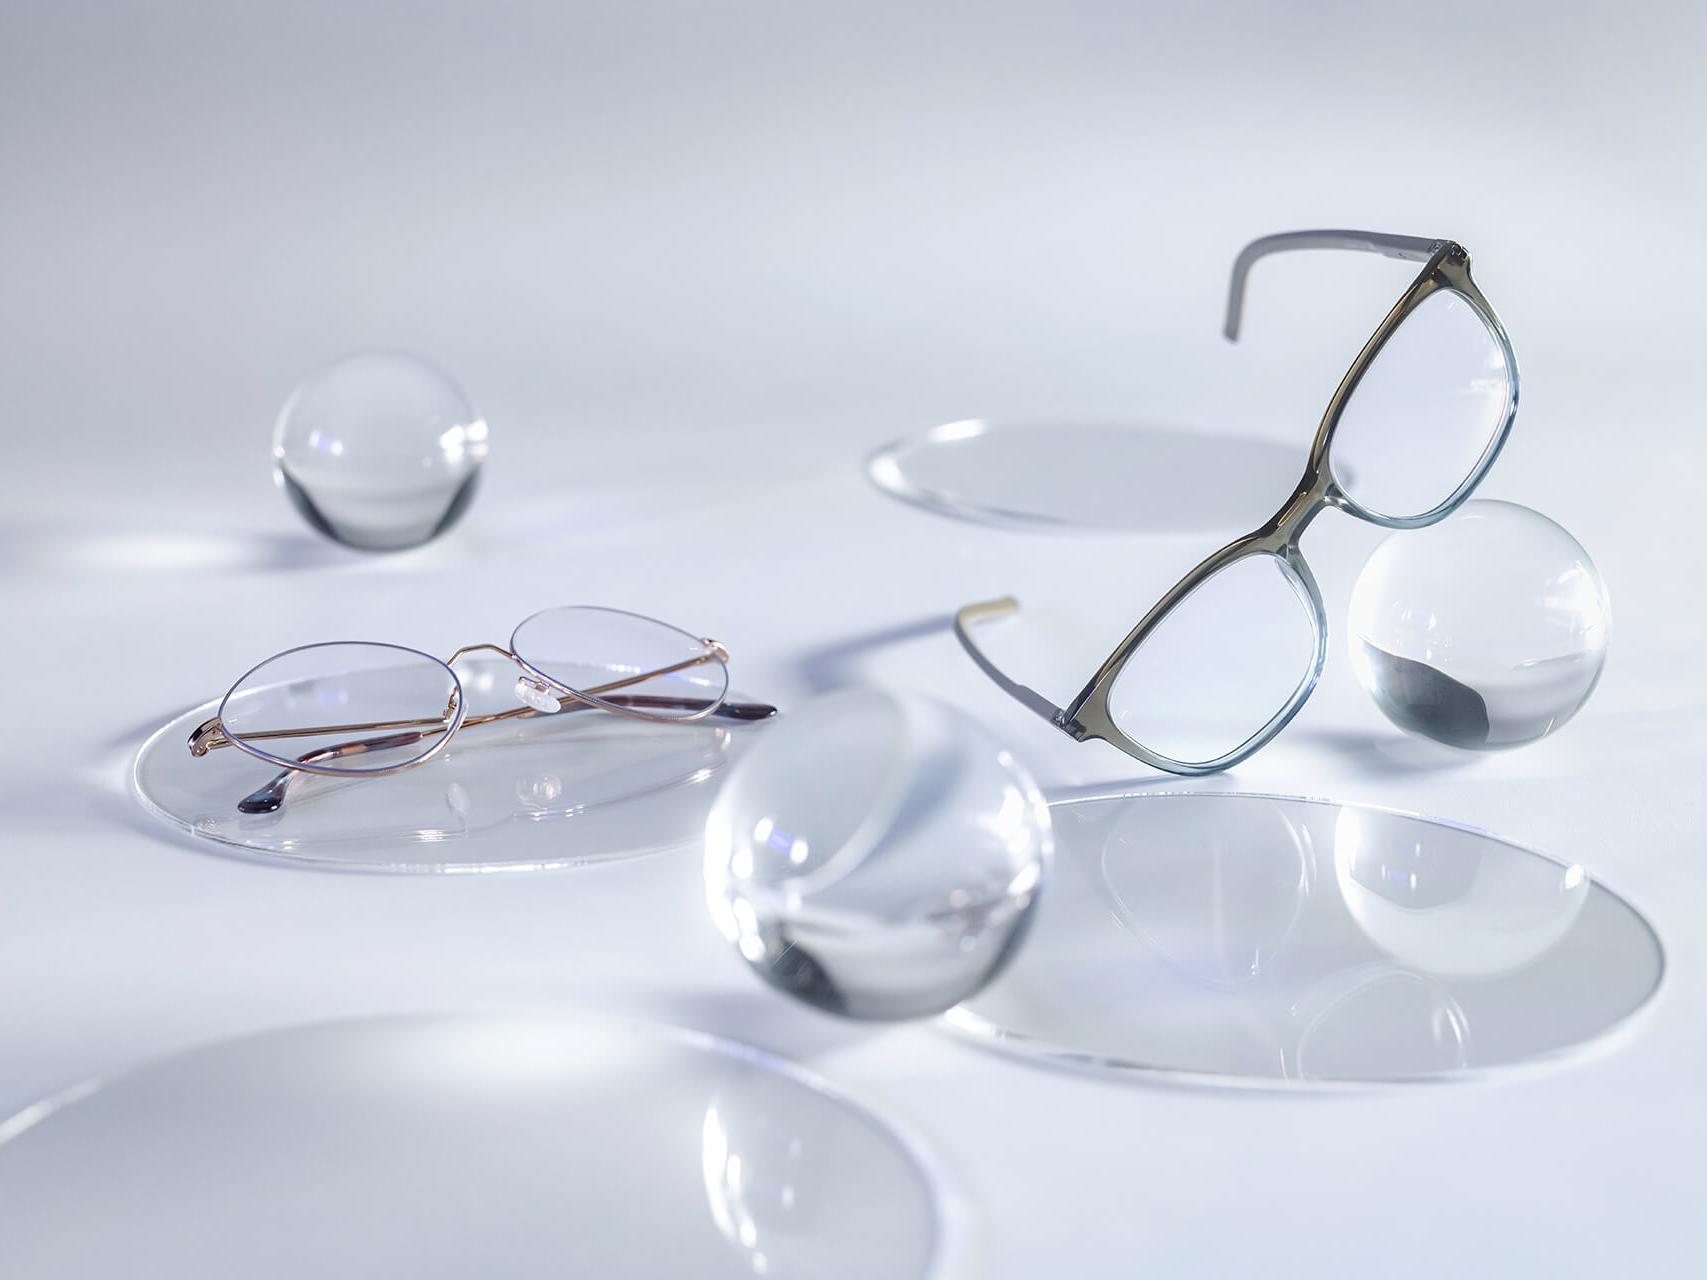 Briller med ZEISS brilleglas, forsynet med DuraVision® Silver coating, og som ses uden reflekser i sammenligning med de omkringværende glas-sfærer.